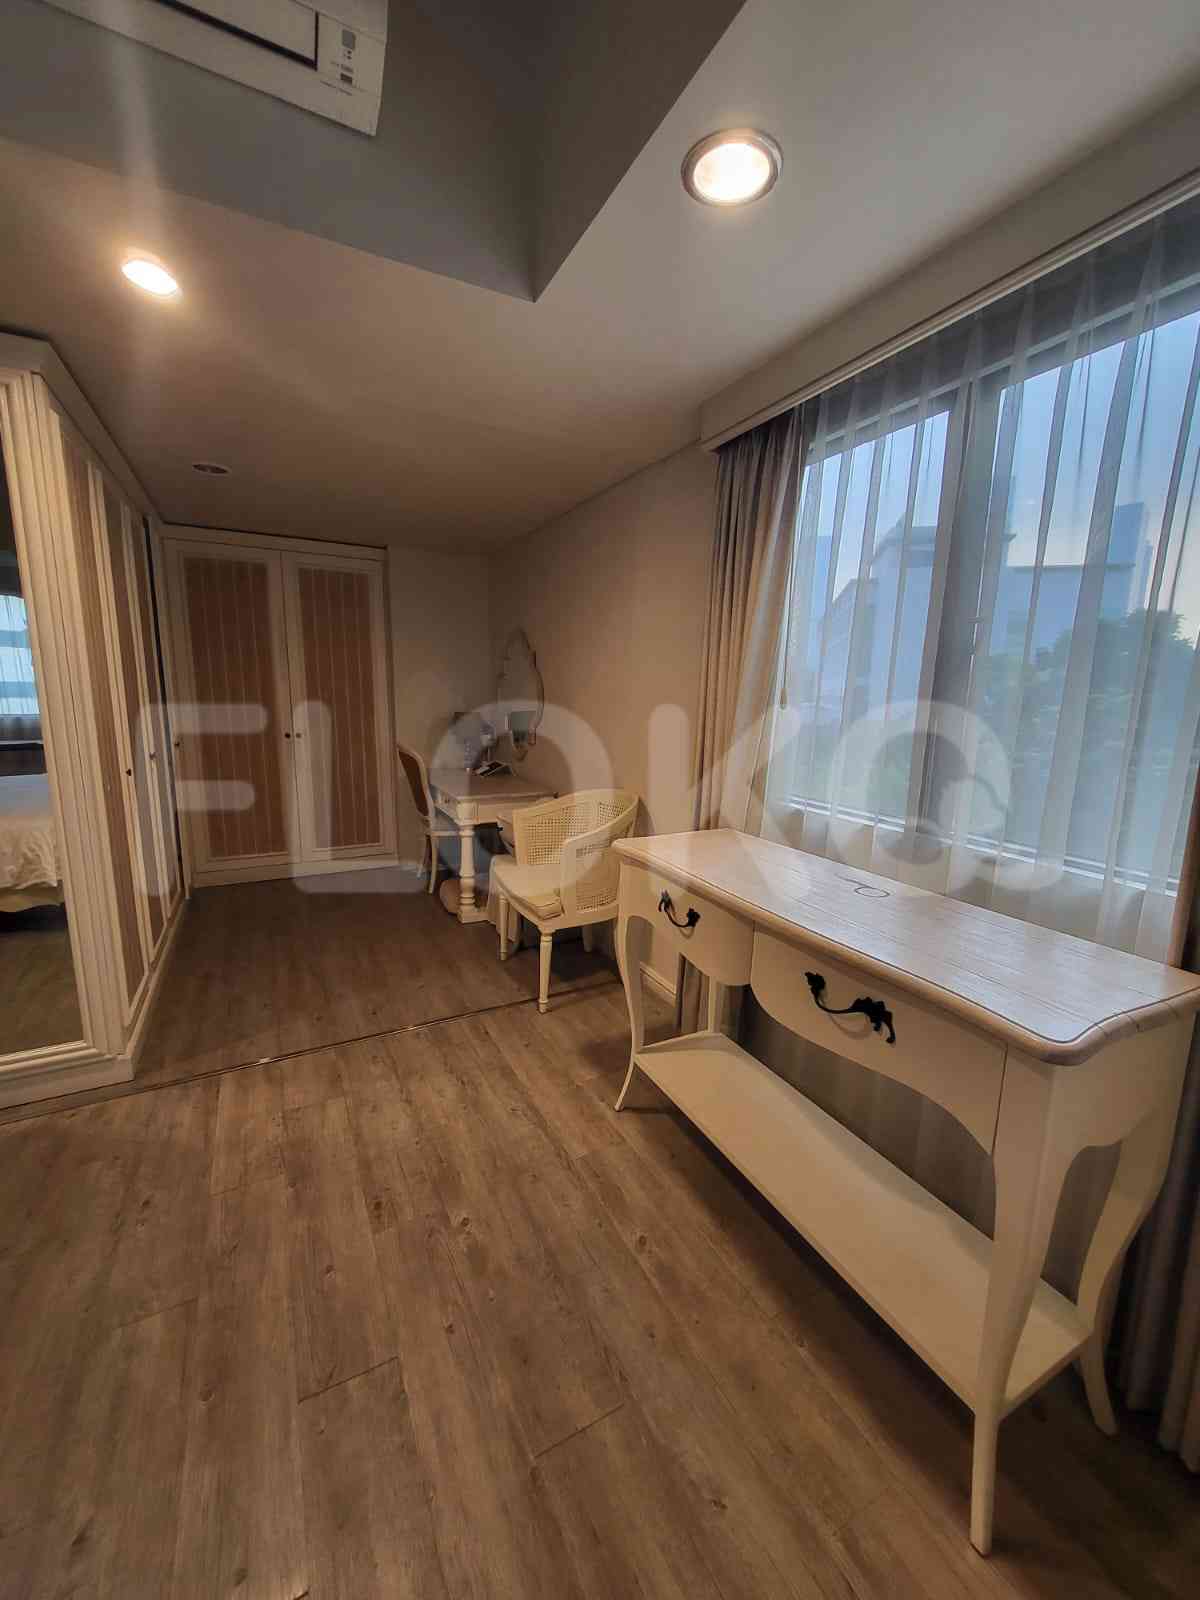 3 Bedroom on 15th Floor for Rent in Apartemen Setiabudi - fku247 8